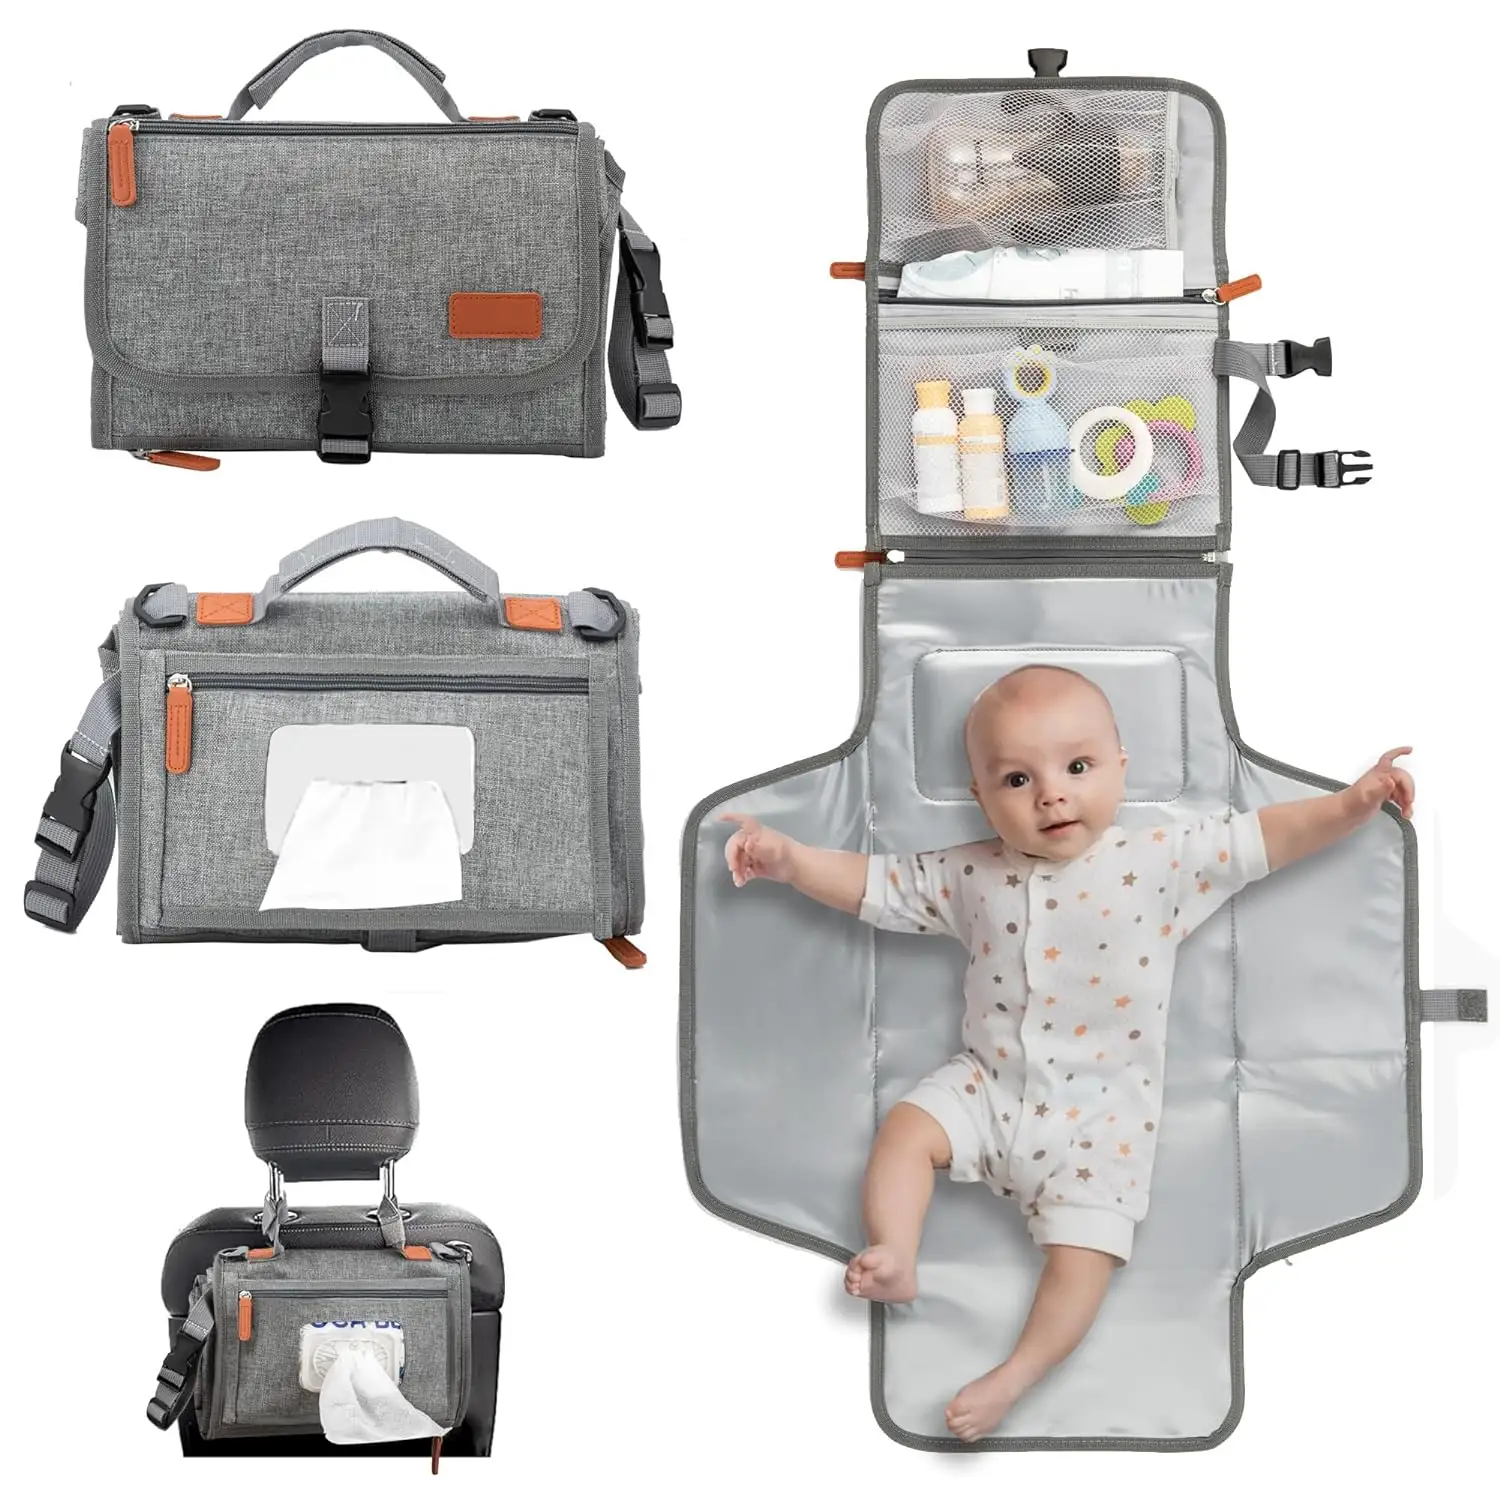 Schlussverkauf Reisen Baby tragbare Wechselmatte Tasche wasserdicht Baby Wickel-Wechselmatte